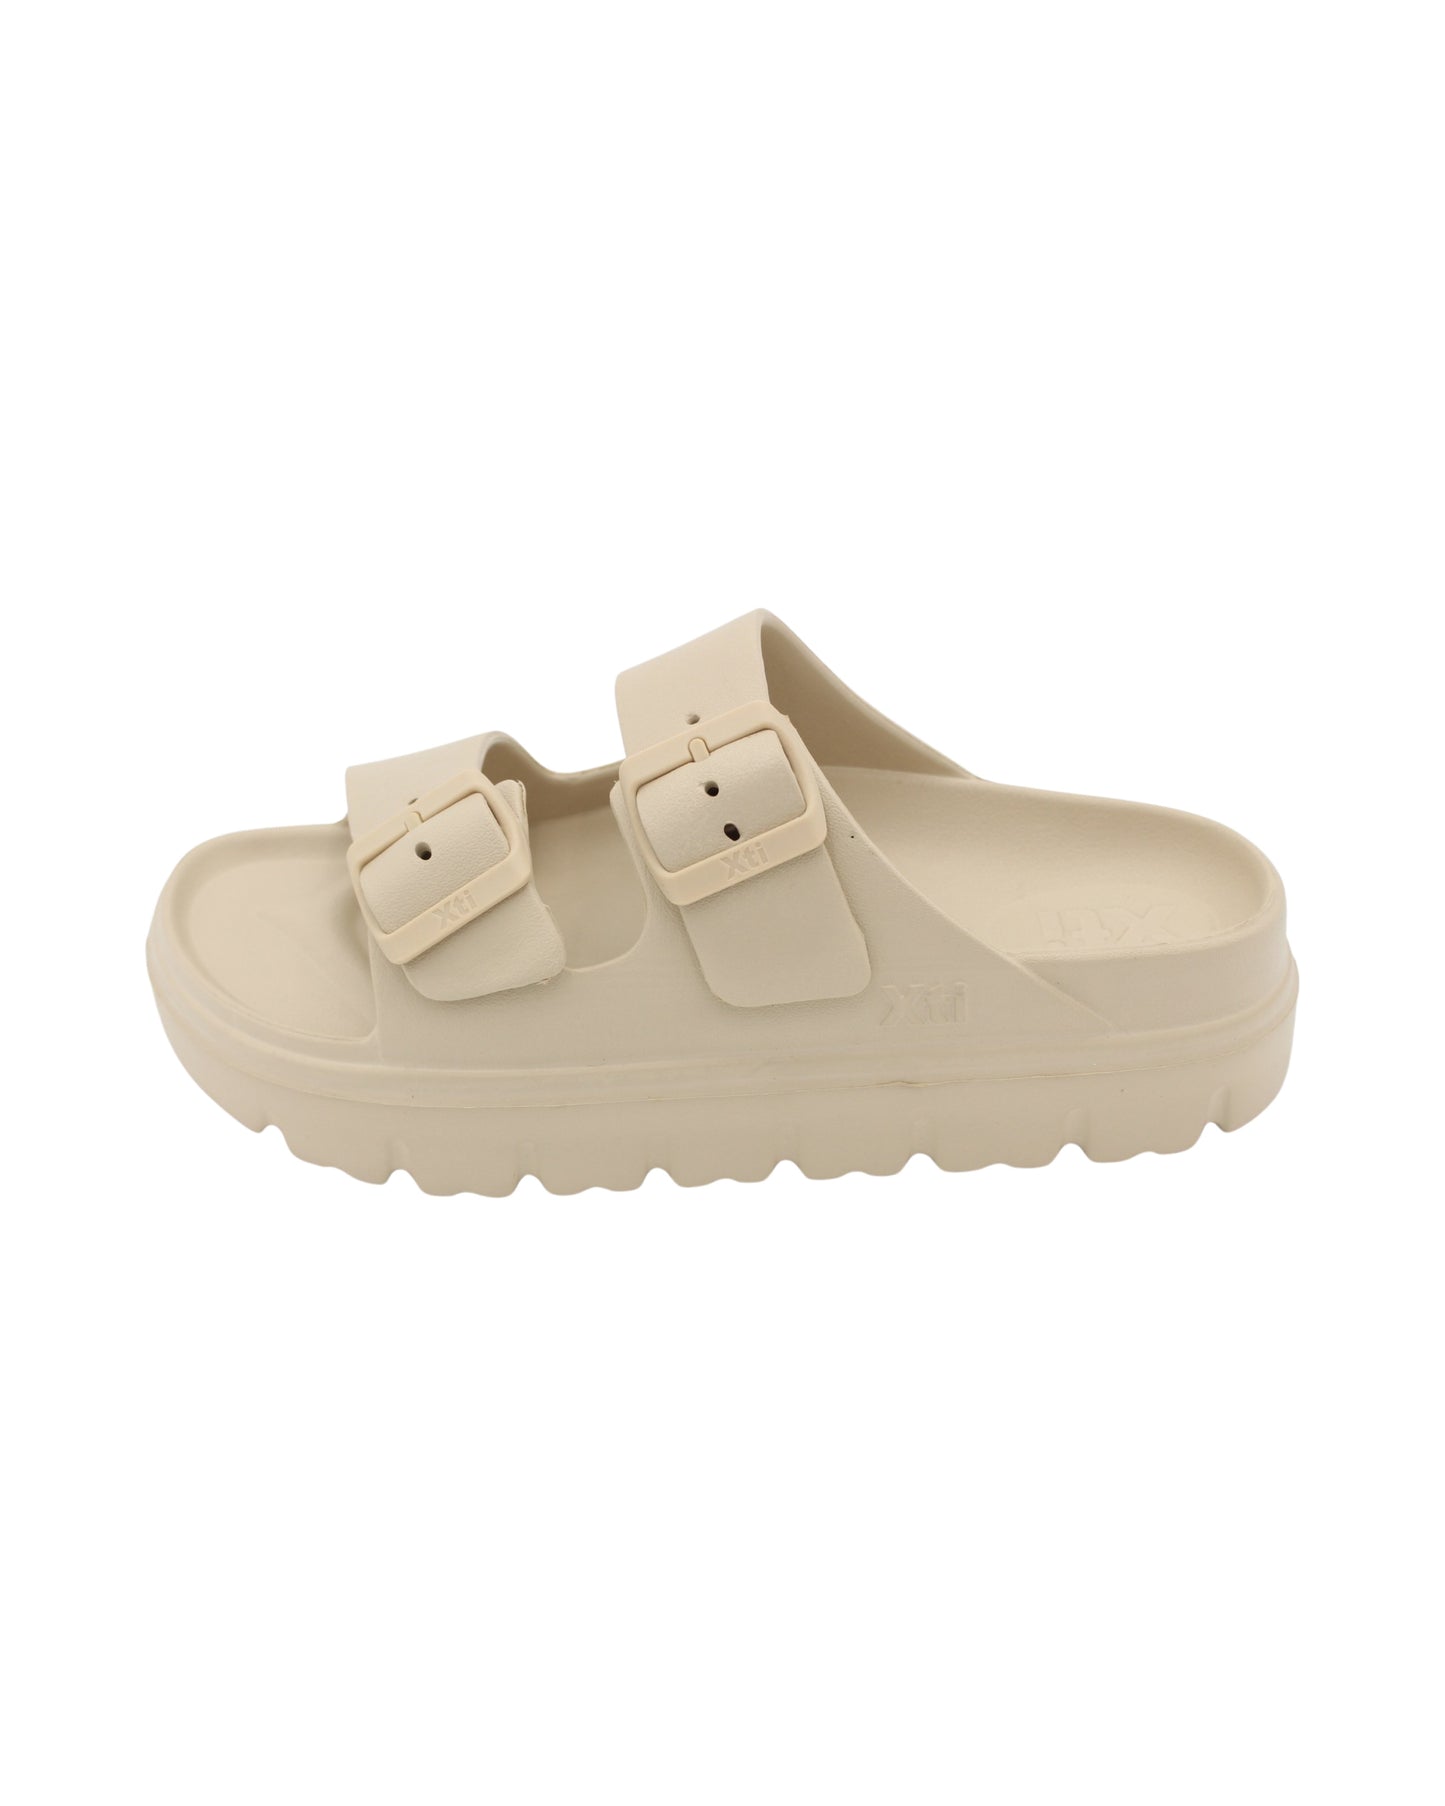 Xti - Ladies Shoes Sandals Cream (2080)